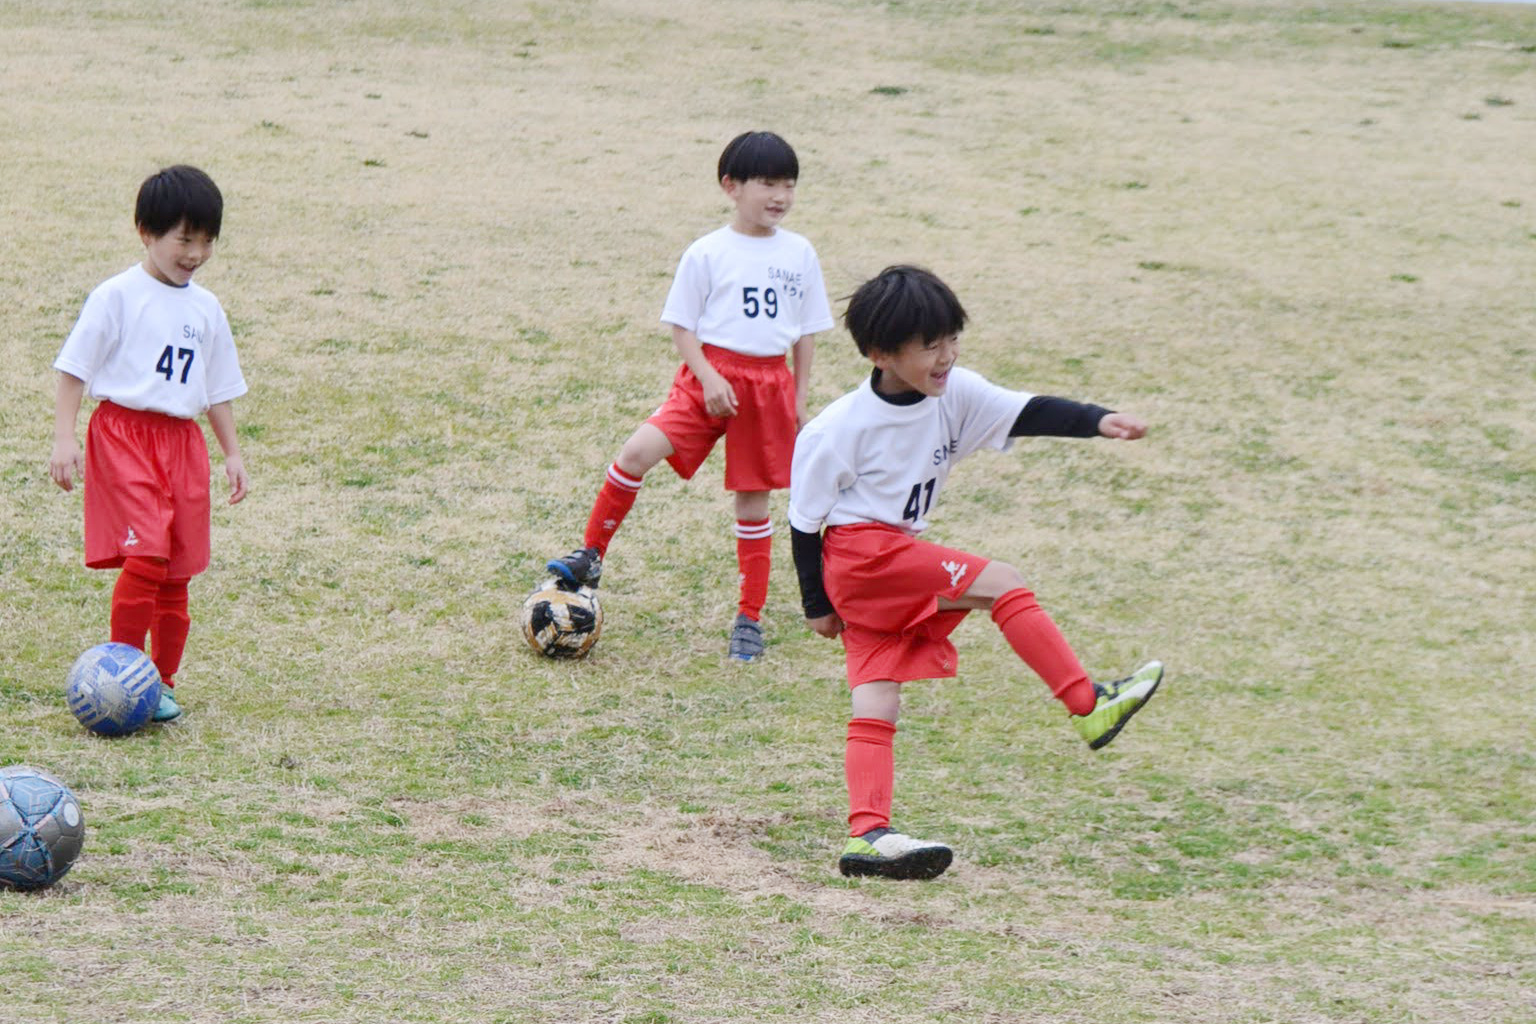 さなえサッカースポーツ少年団ーさなえjscー 大阪府池田市を拠点に活動している さなえサッカースポーツ少年団 さなえjsc